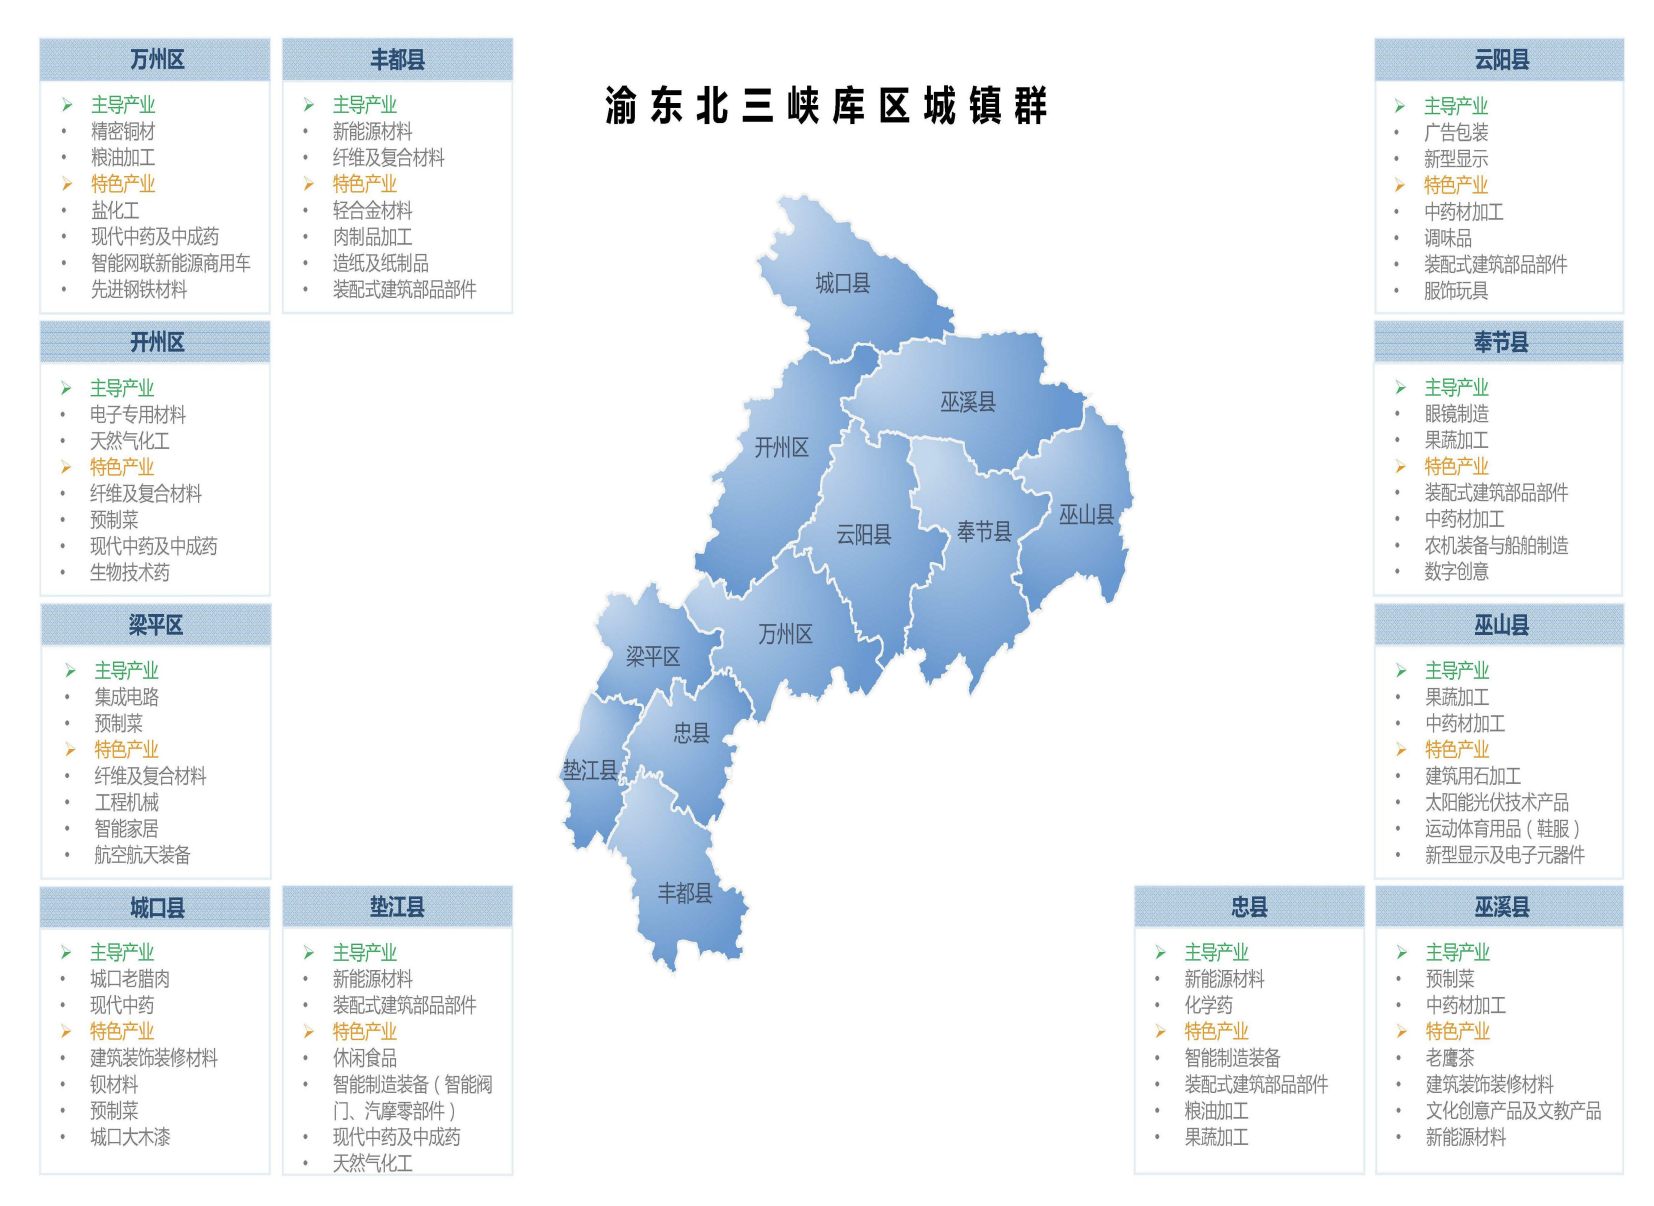 产业地图公布！来看重庆先进制造业如何布局3